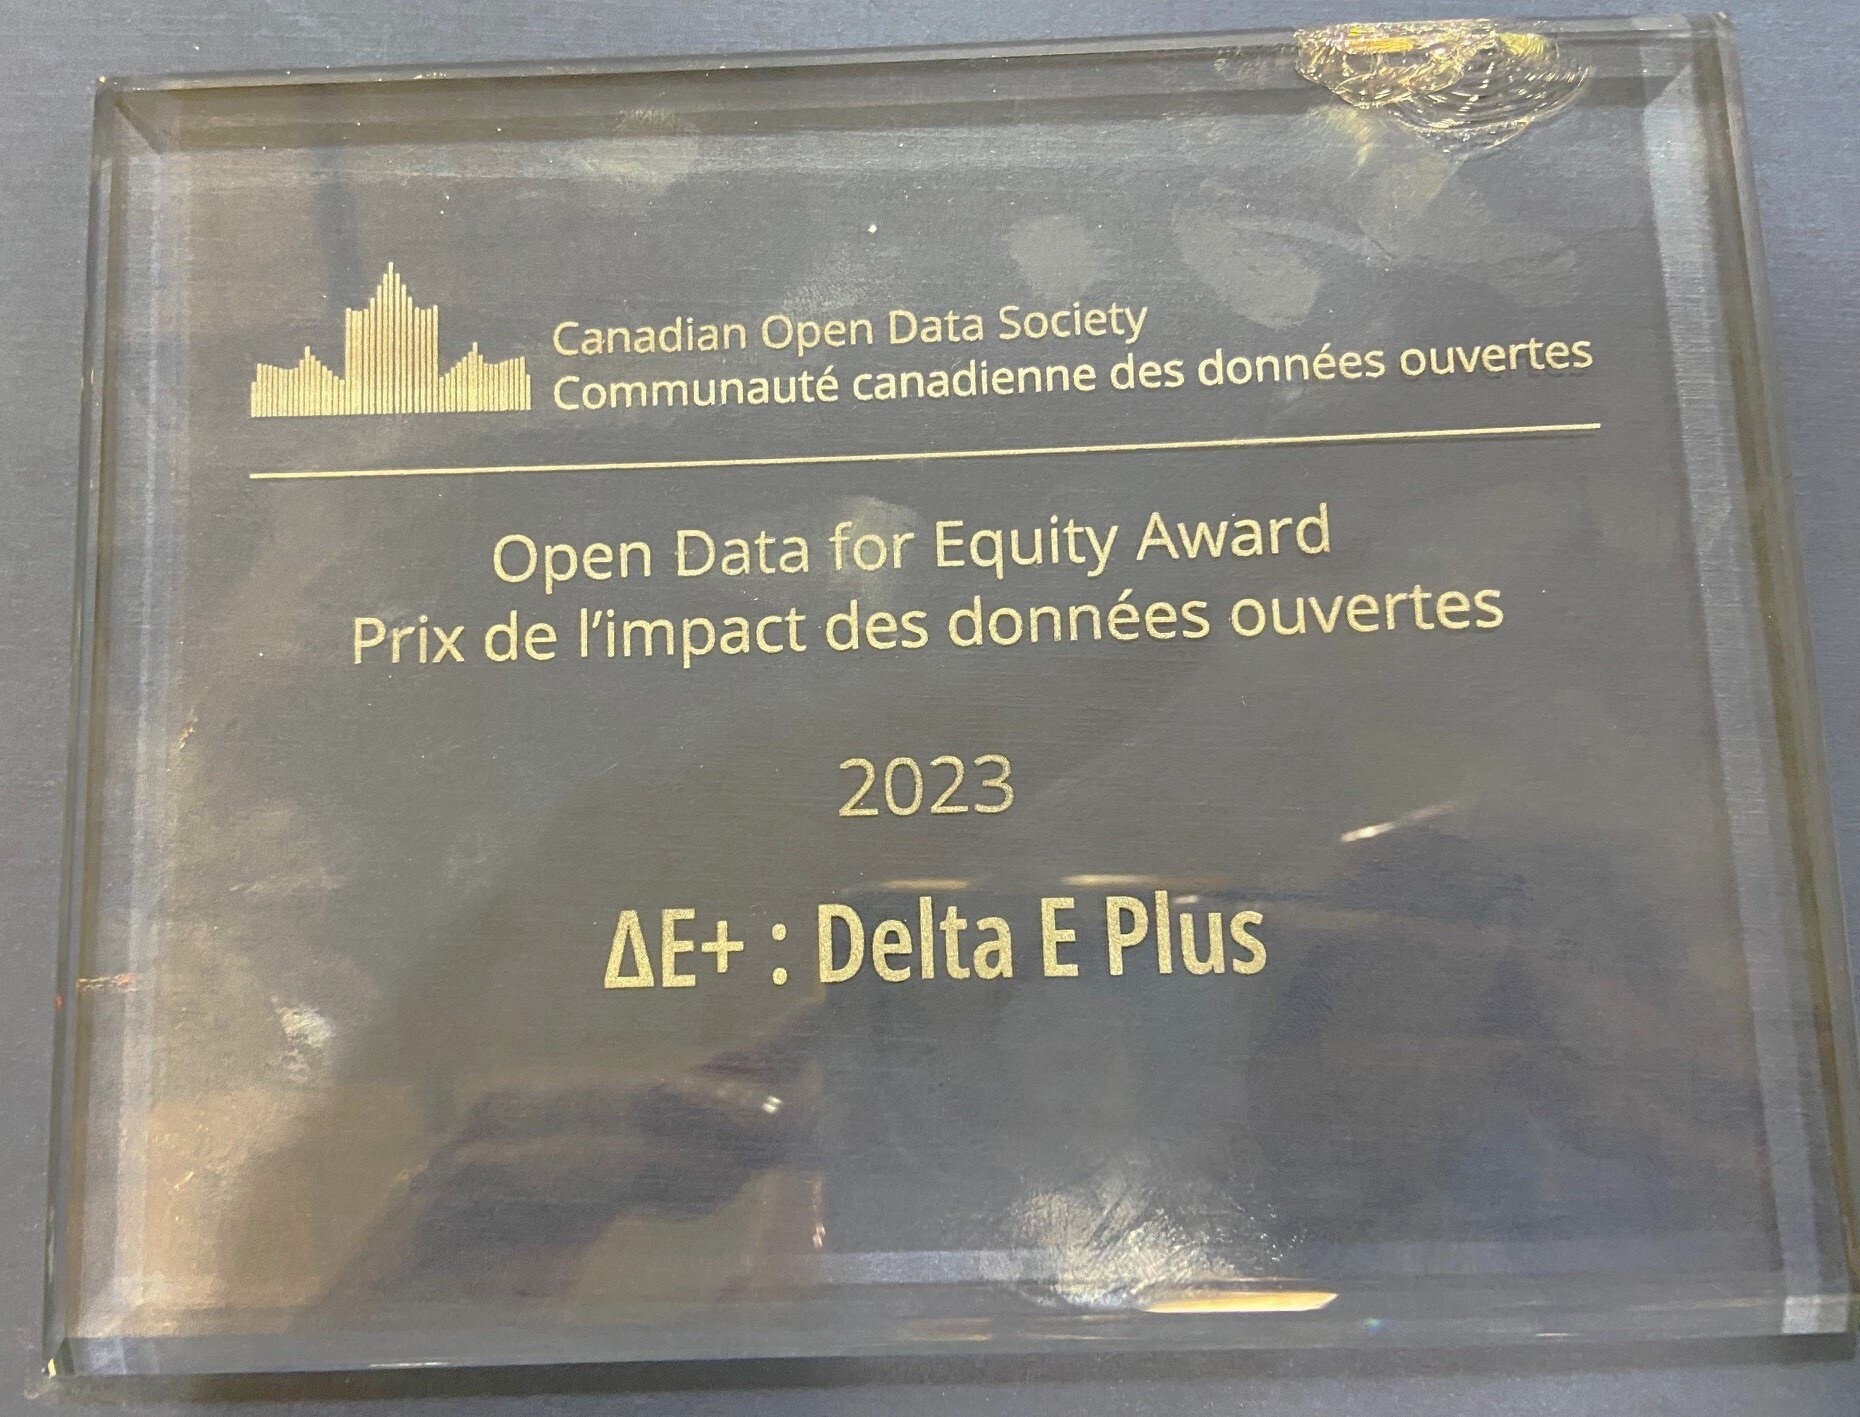 ΔDelta E+ awarded the Open Data Equity Award from the Canadian Open Data Society